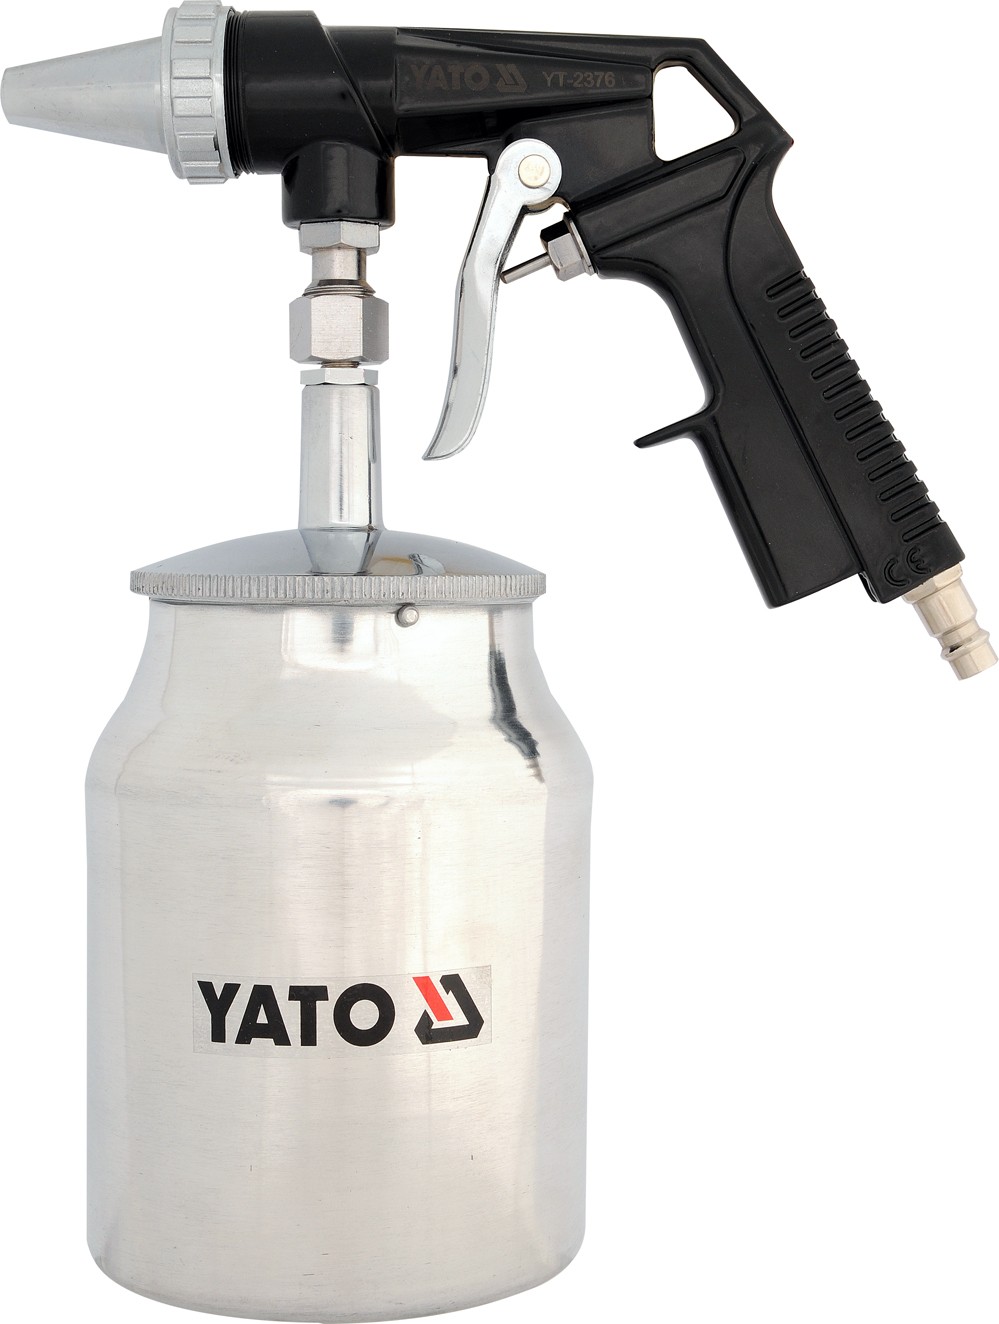 YATO Pískovací pistole se zásobníkem 1.0L 160l/min